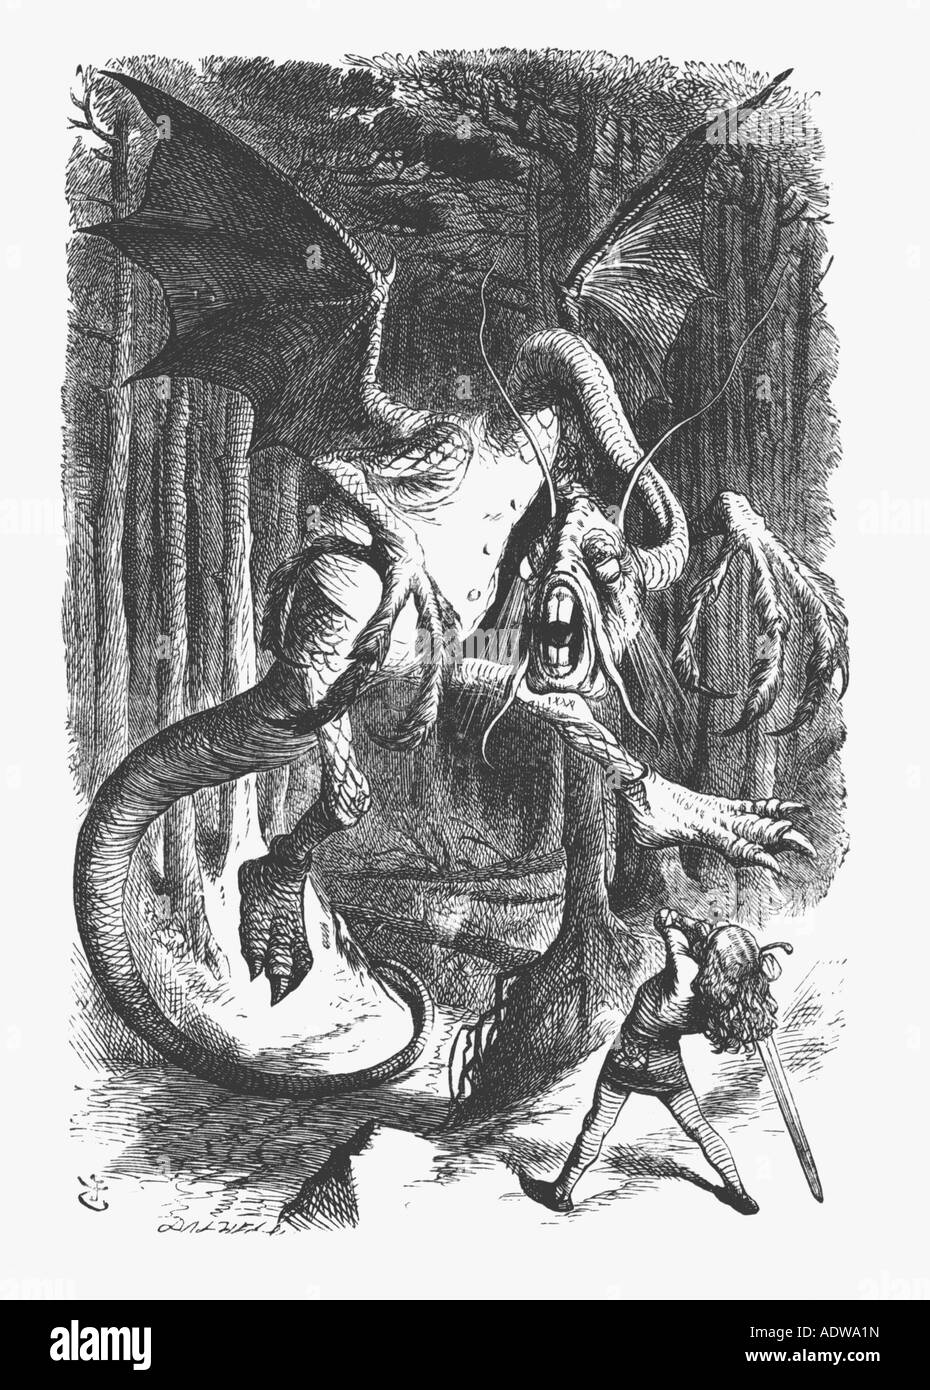 Ilustración del Jabberwock desde s Lewis Carroll Alicia a Través del Espejo por John Tenniel Foto de stock